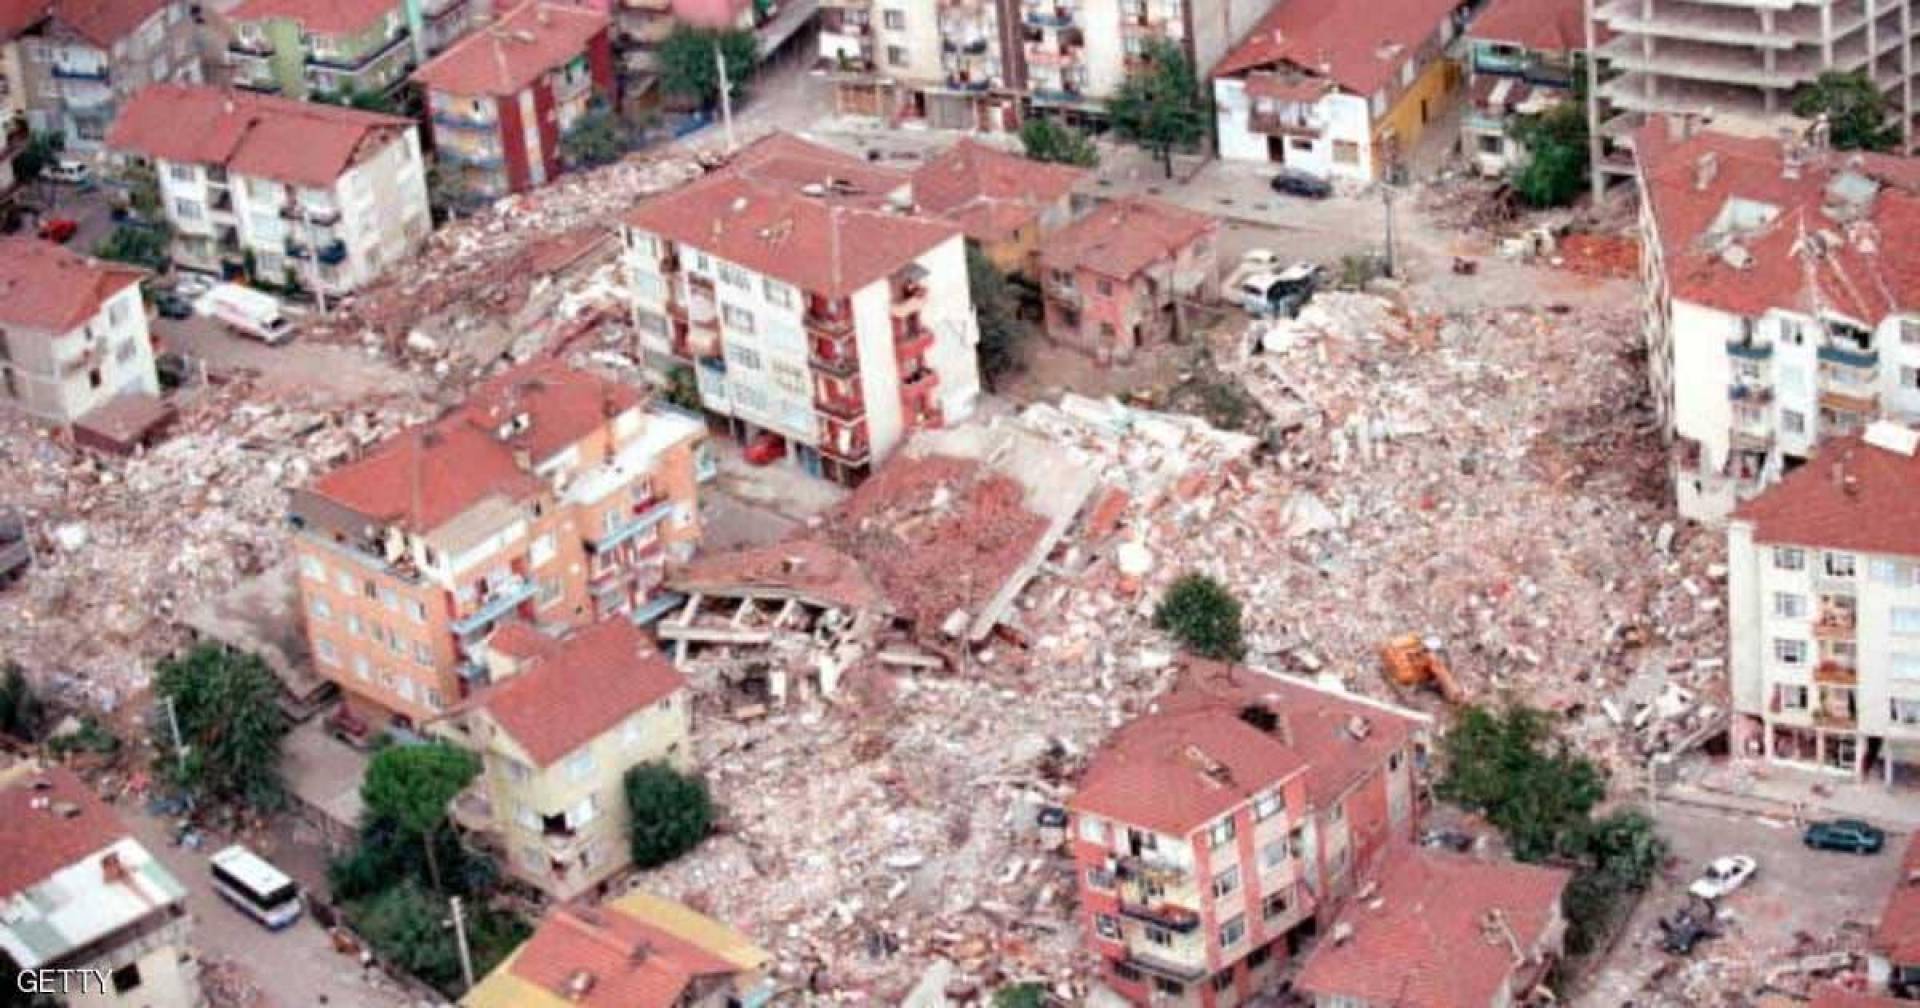 زلزال بقوة 6.8 درجات يضرب تركيا
